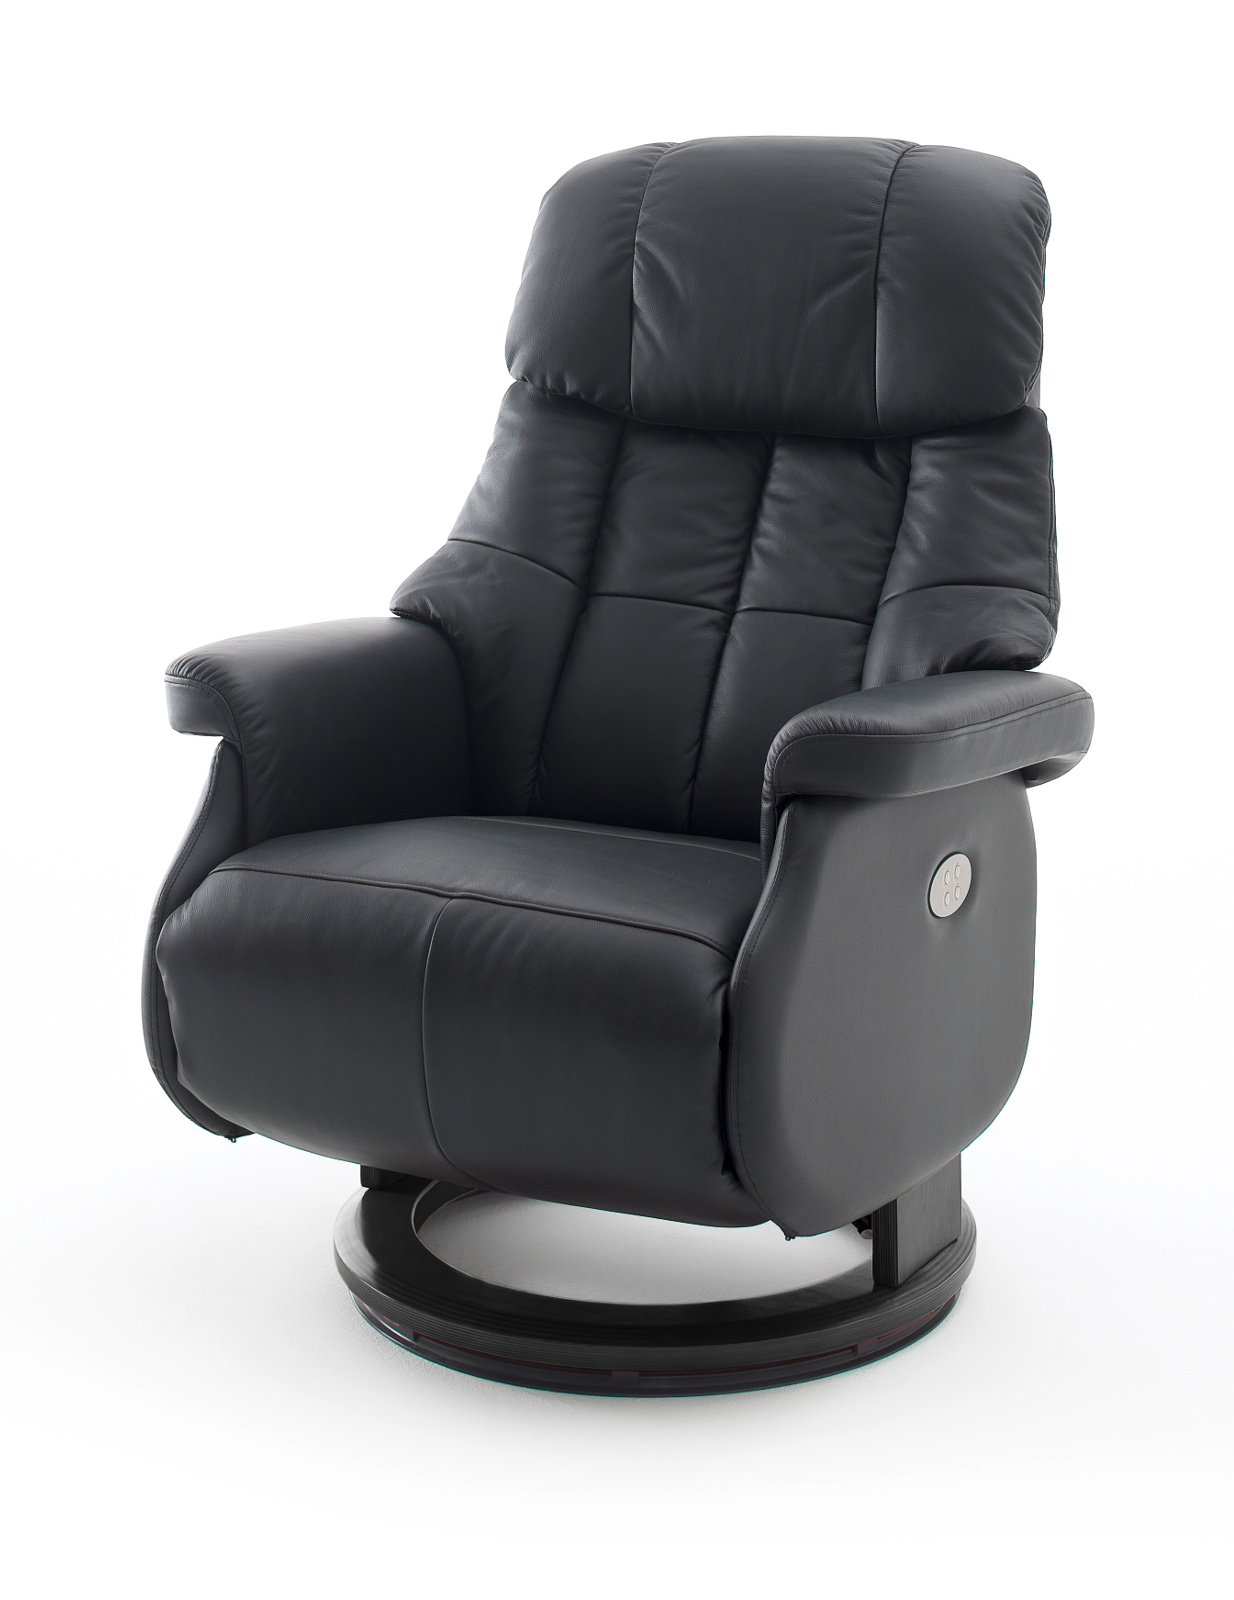 Relaxsessel Calgary XL in schwarz Leder elektrisch verstellbar Funktionssessel bis 150 kg Fernsehsessel 82 x 111 cm